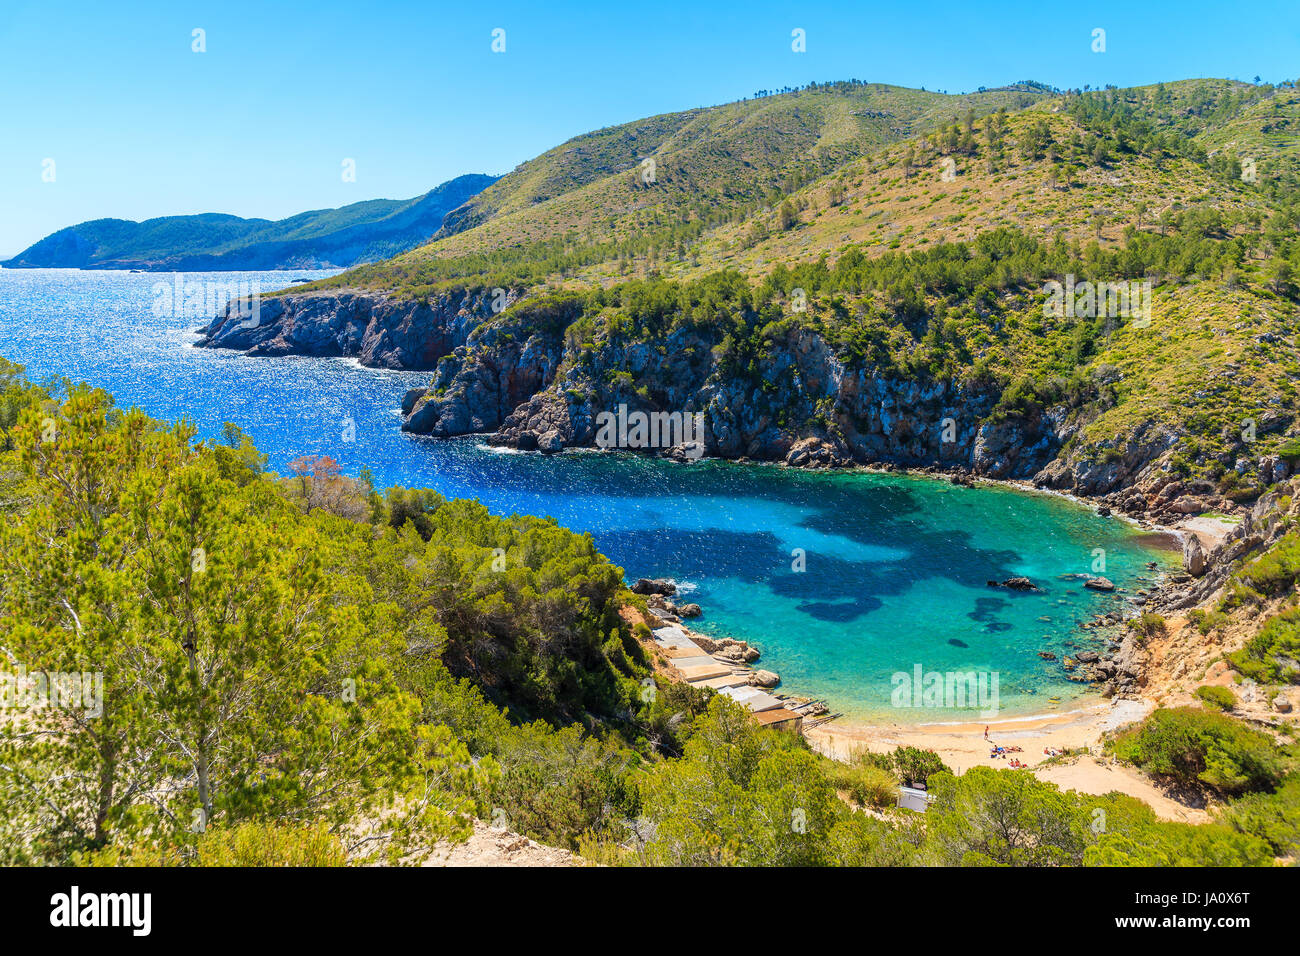 Vista de la solitaria cala d'en Serra playa y acantilado costero rocas, la isla de Ibiza, España Foto de stock